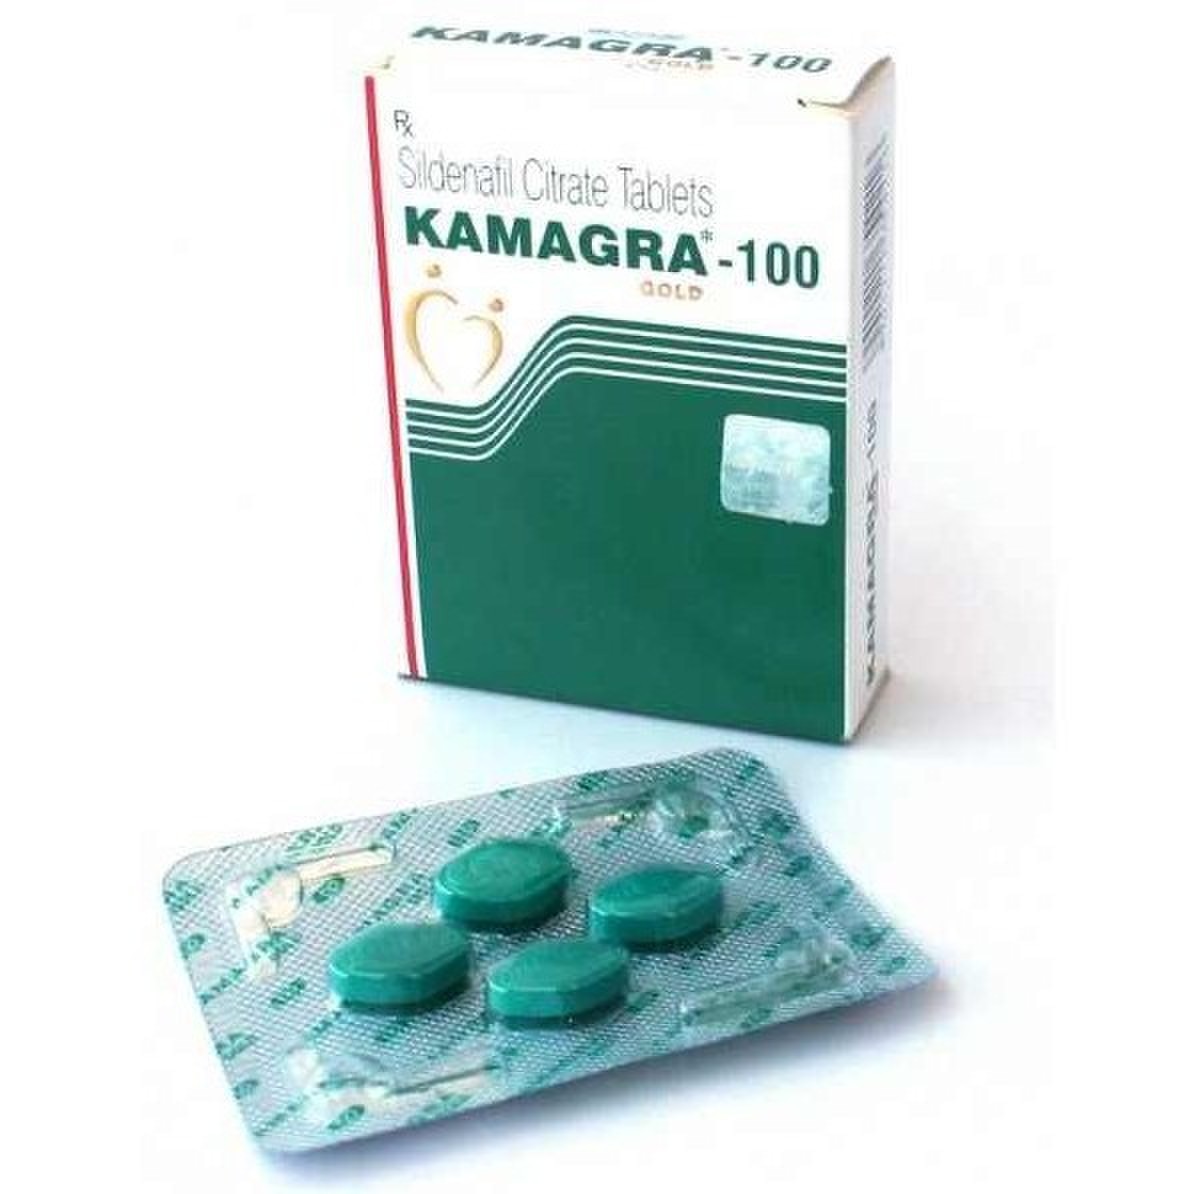 Benefits of Kamagra